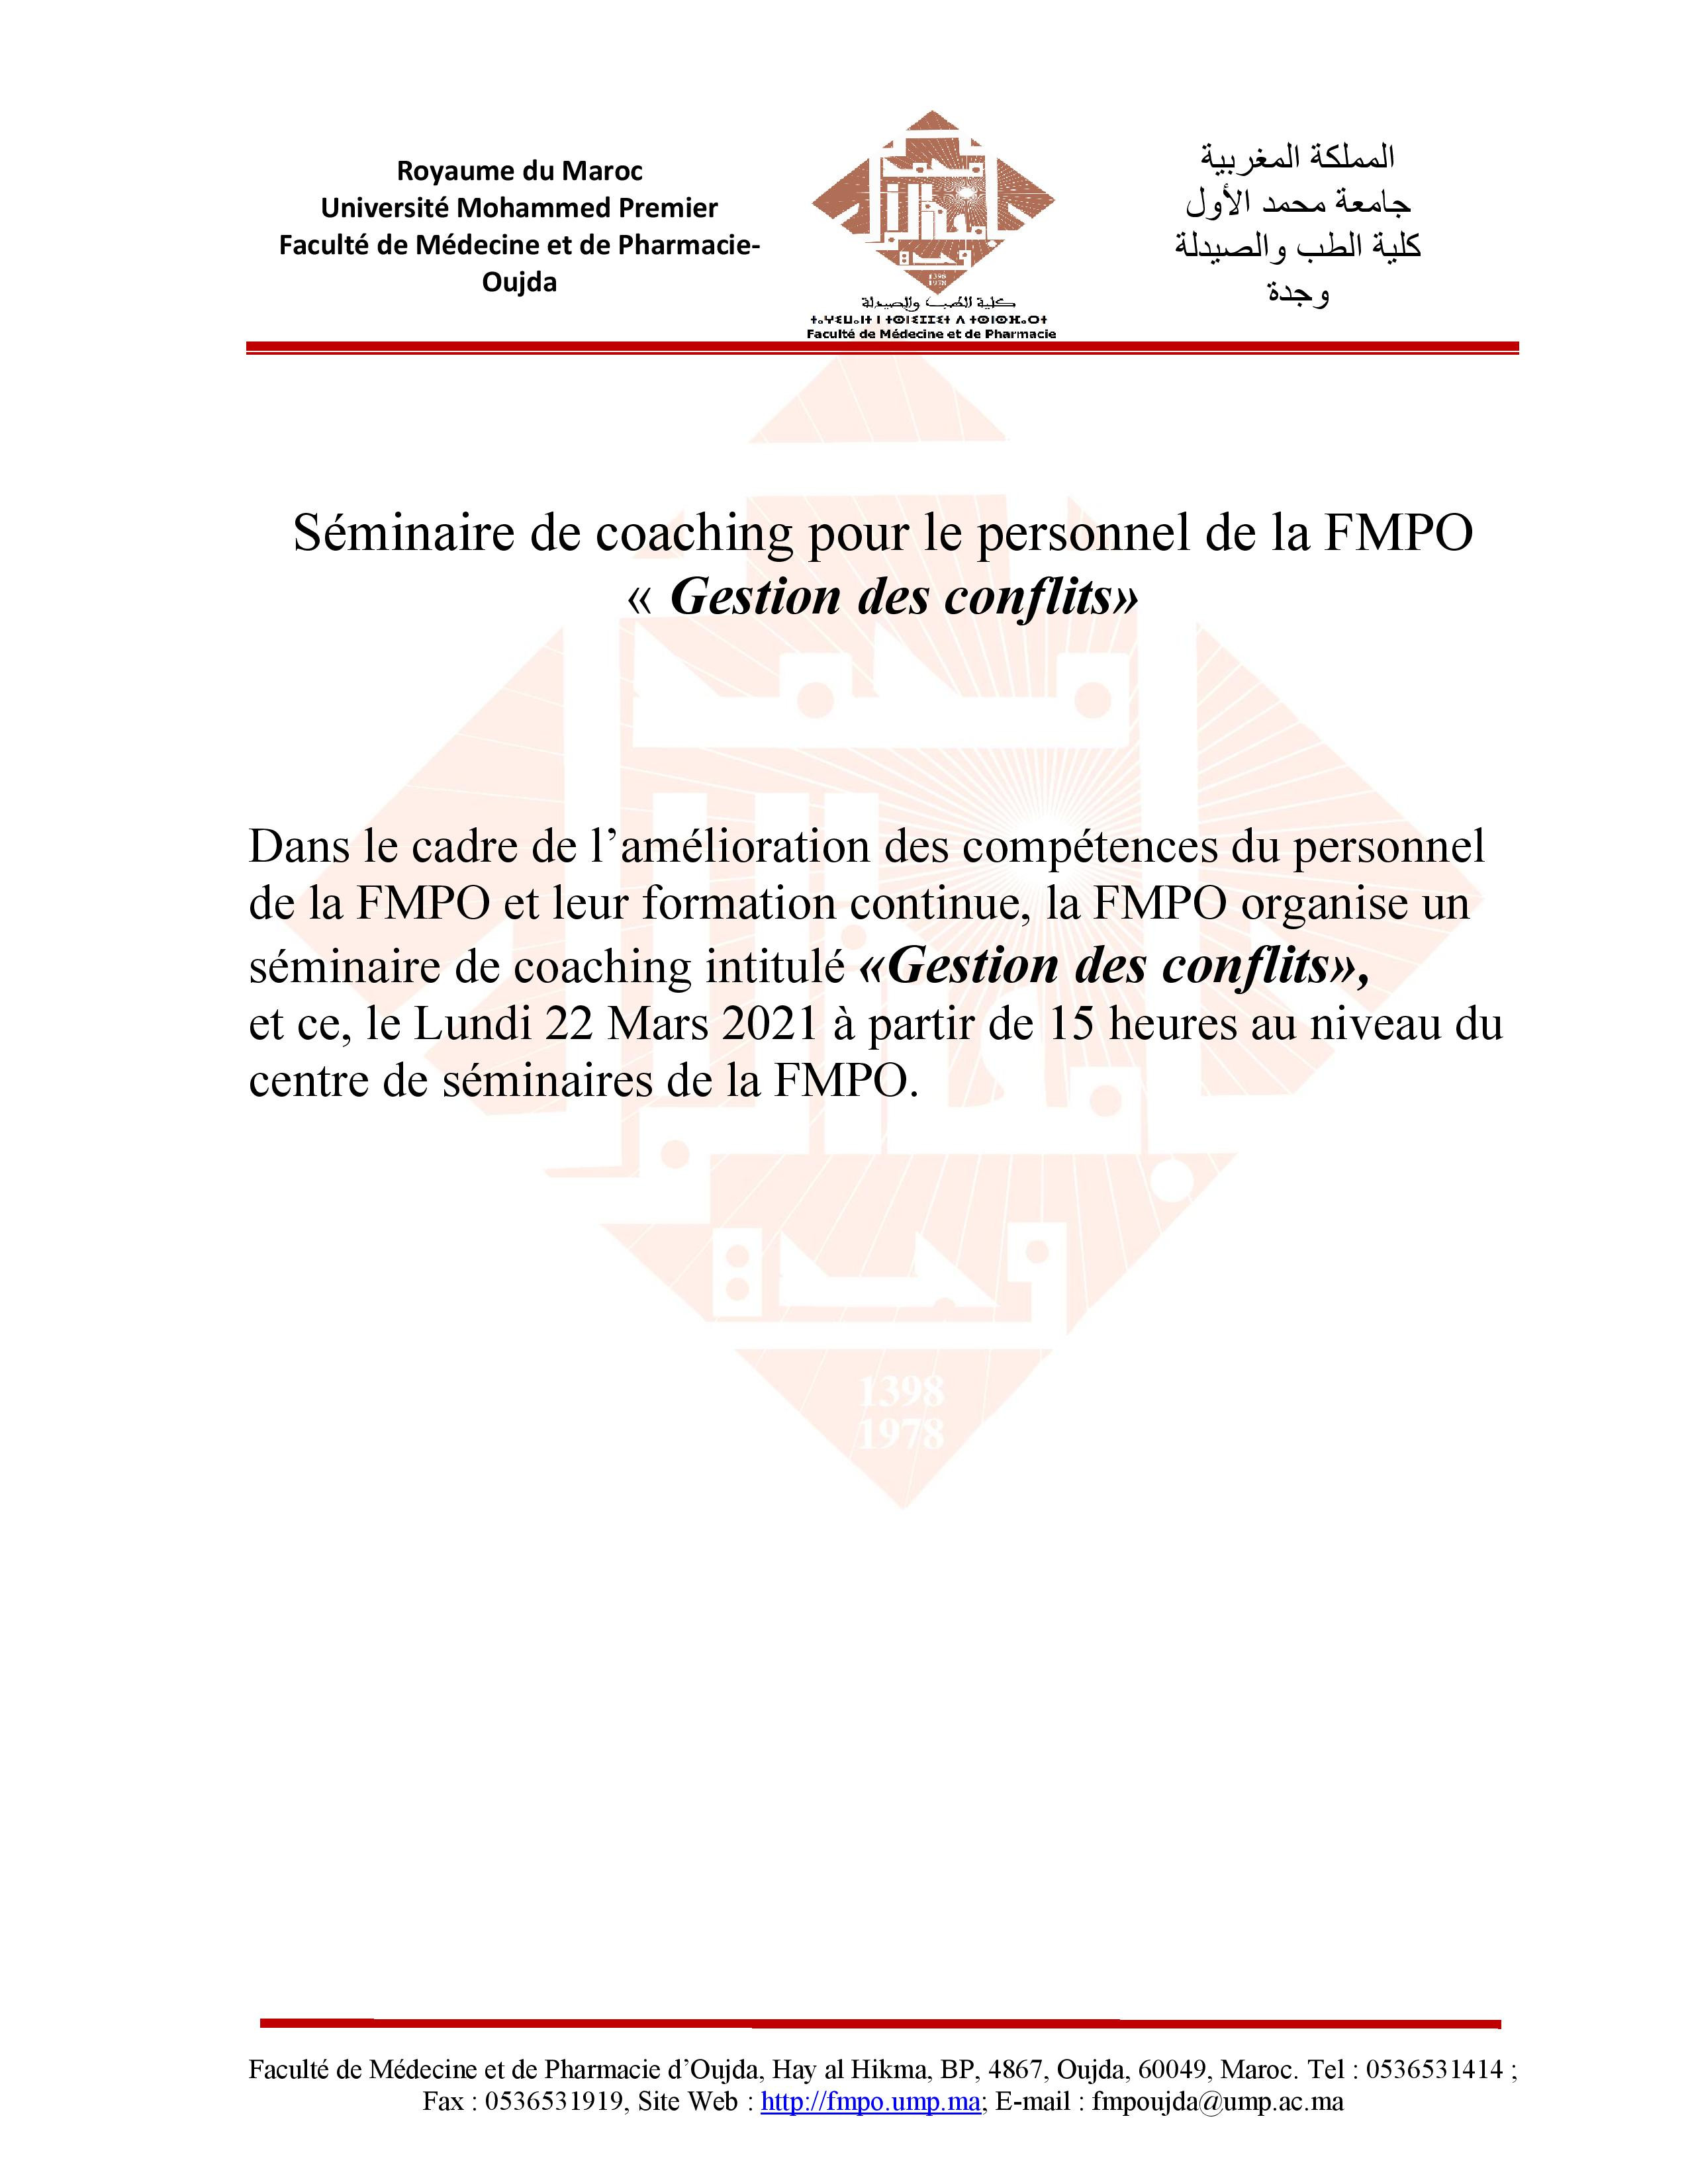 Séminaire de Coaching pour le personnel de la FMPO